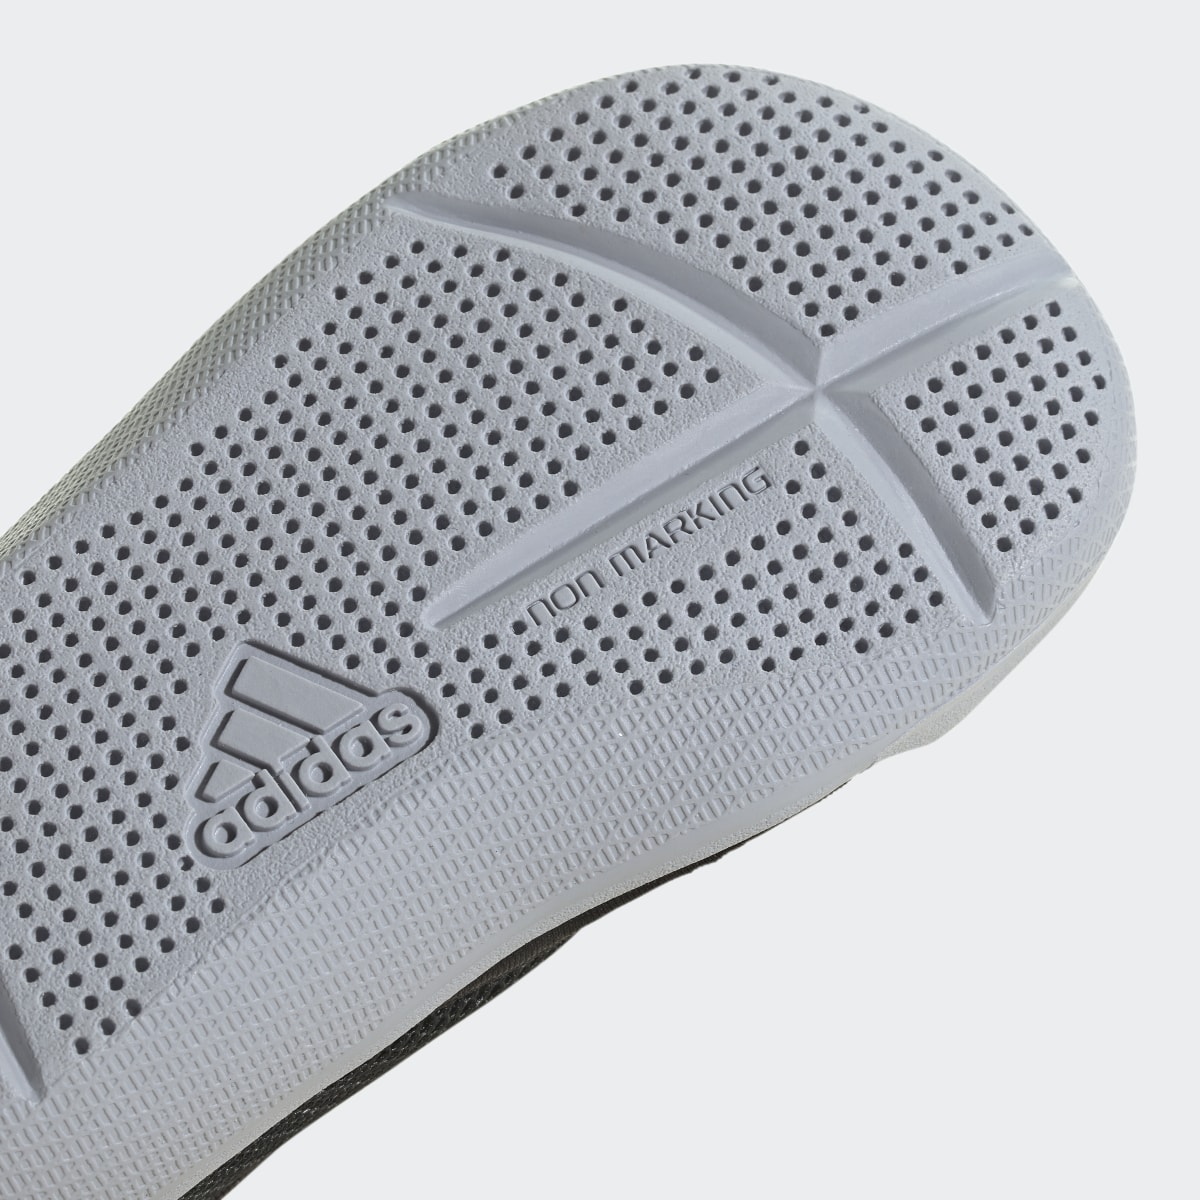 Adidas Altaventure Sport Swim Sandals. 9